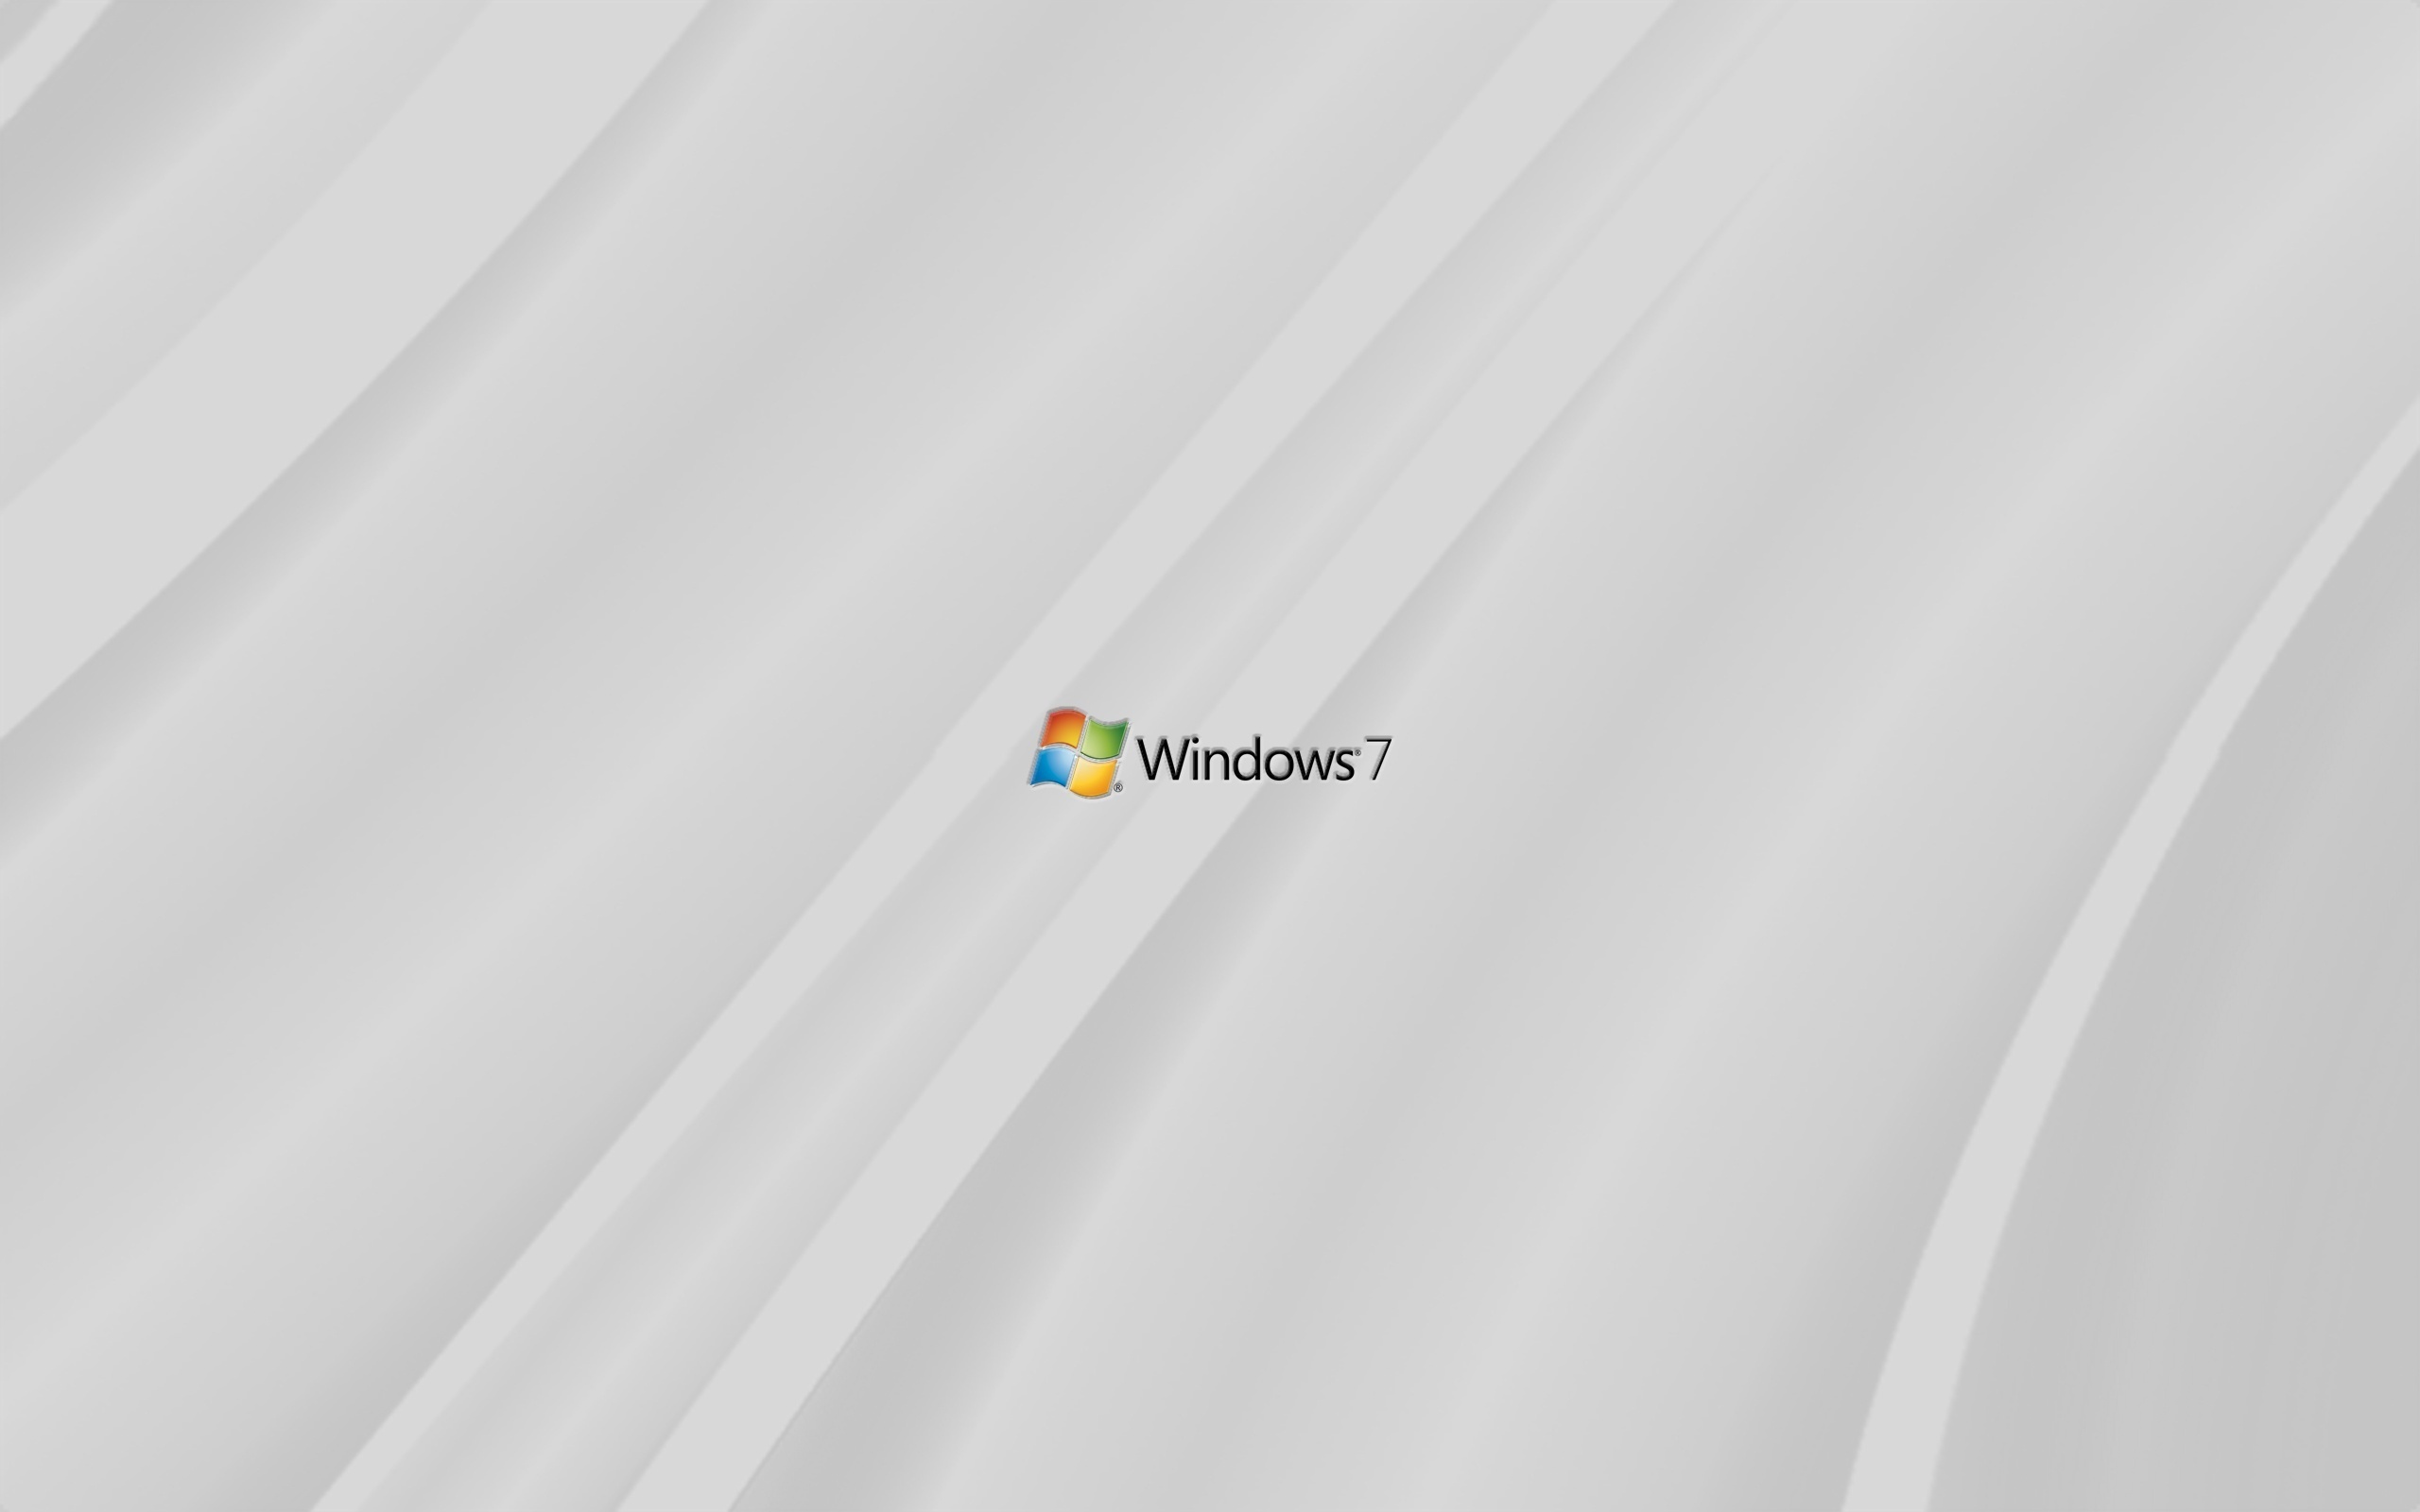  , , windows 7, , , ,,, 